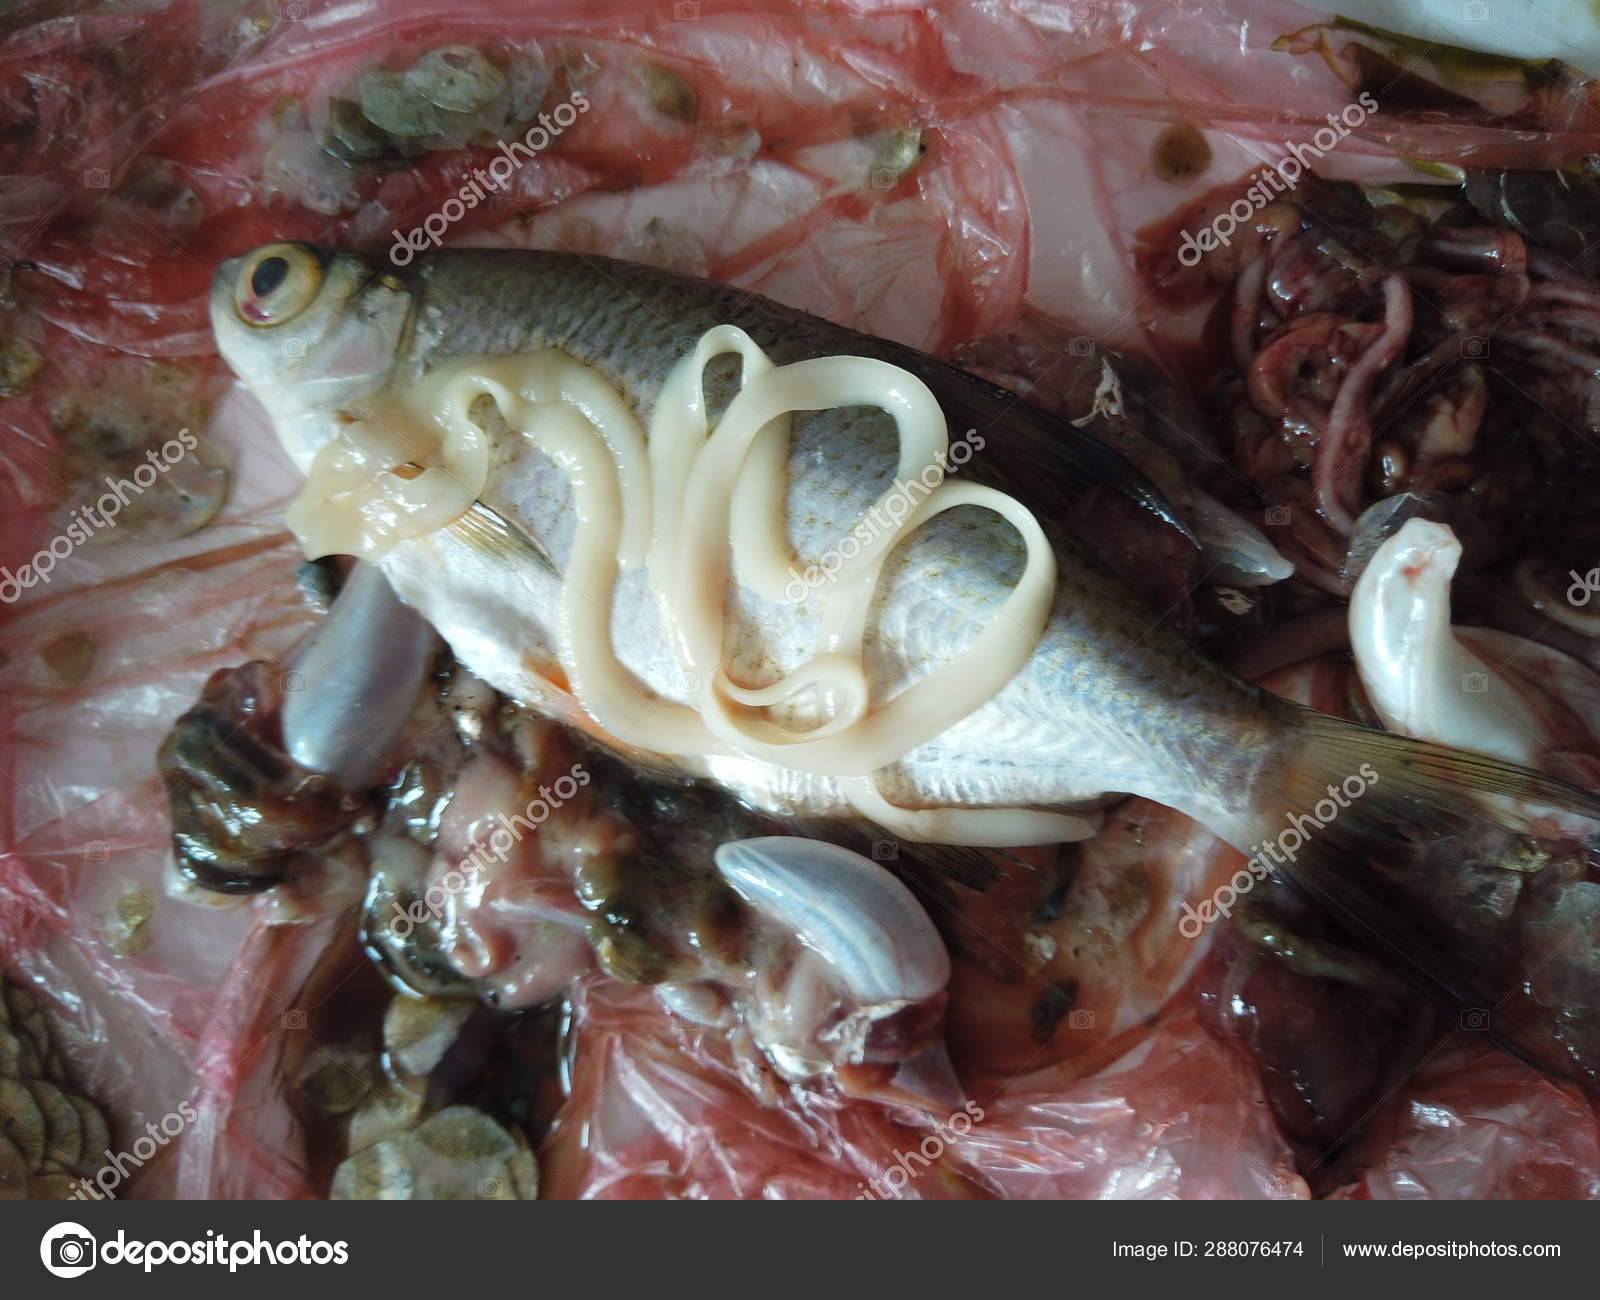 Селитерная рыба: описание, особенности, фото